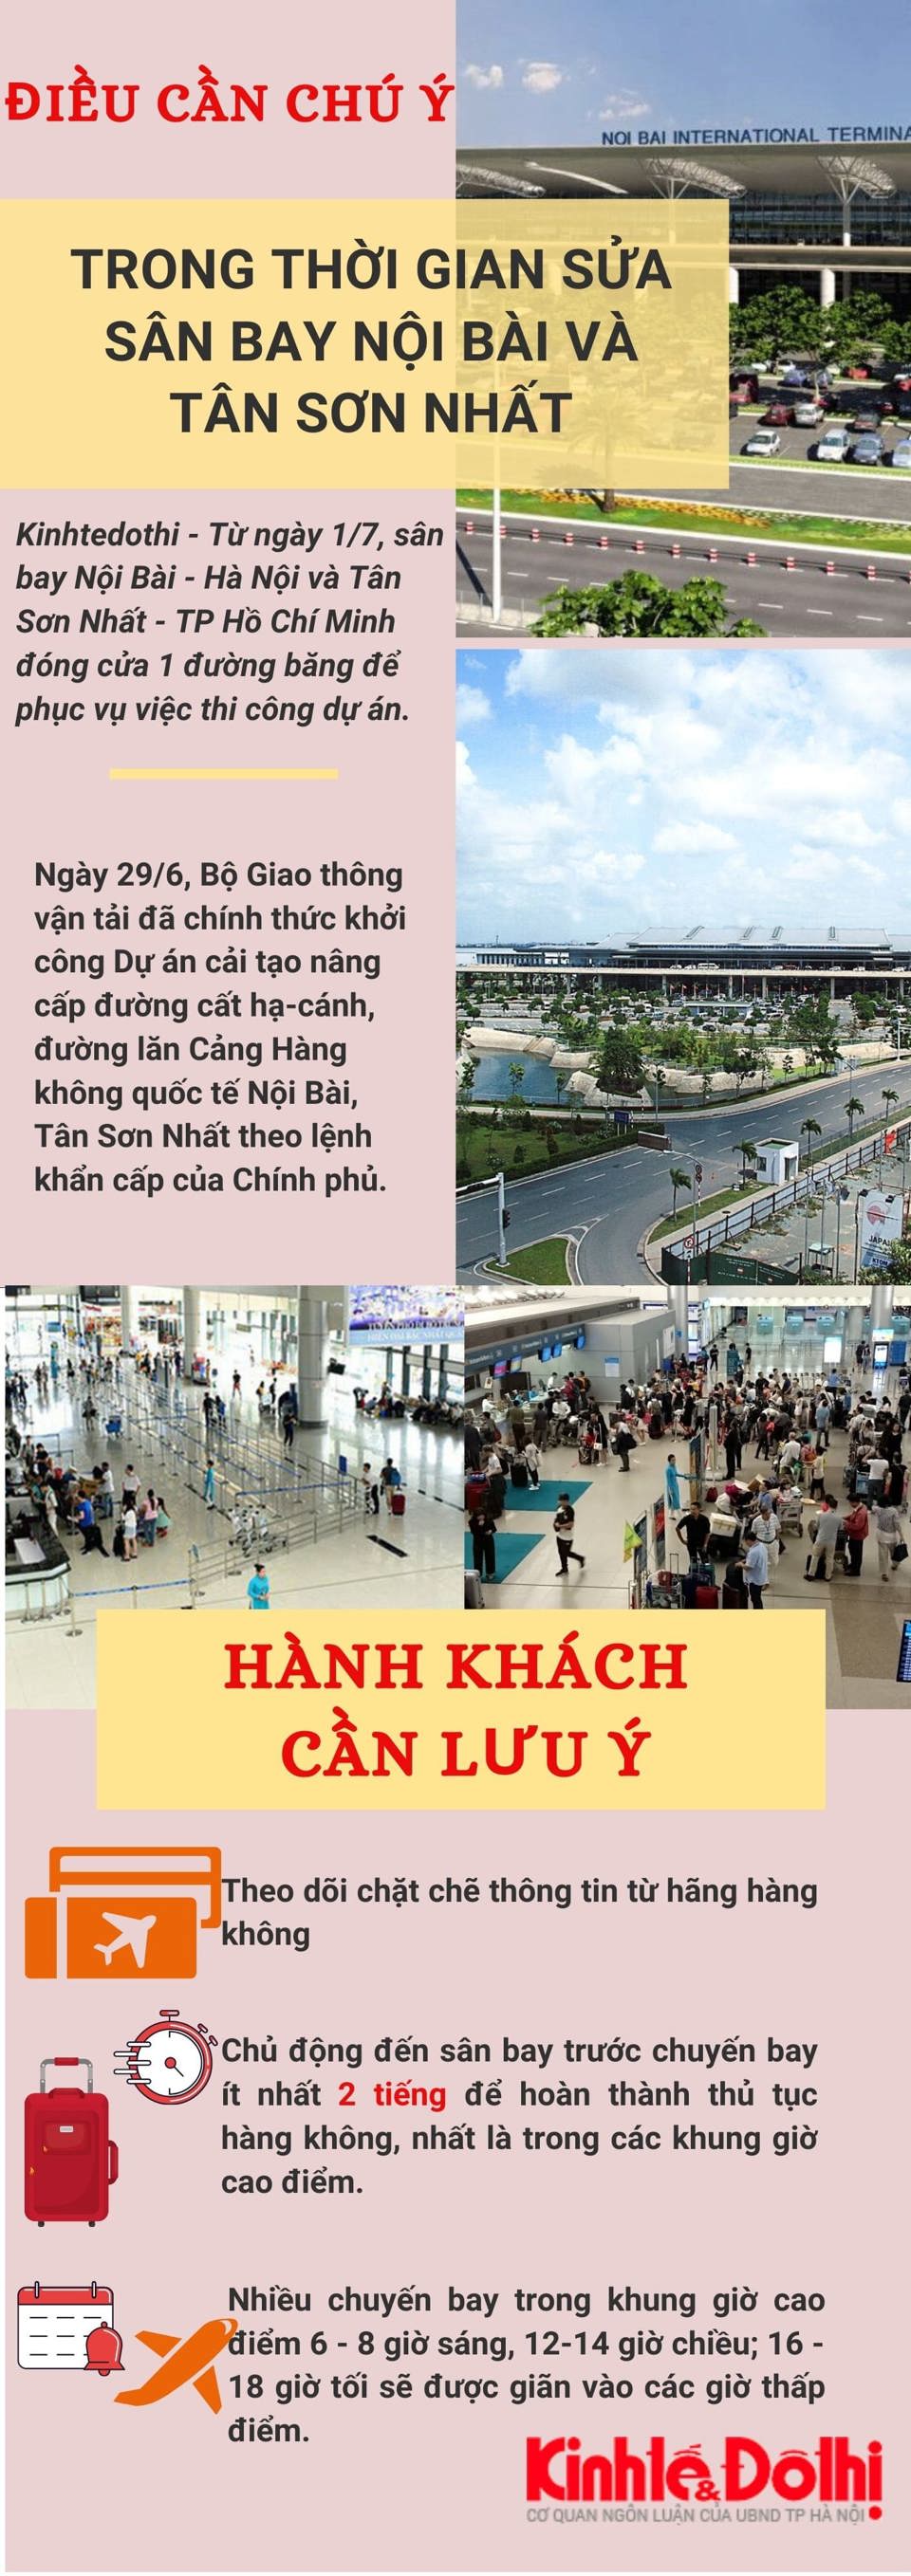 [Infographic] Khuyến cáo hành khách đến sân bay Nội Bài và Tân Sơn Nhất - Ảnh 1